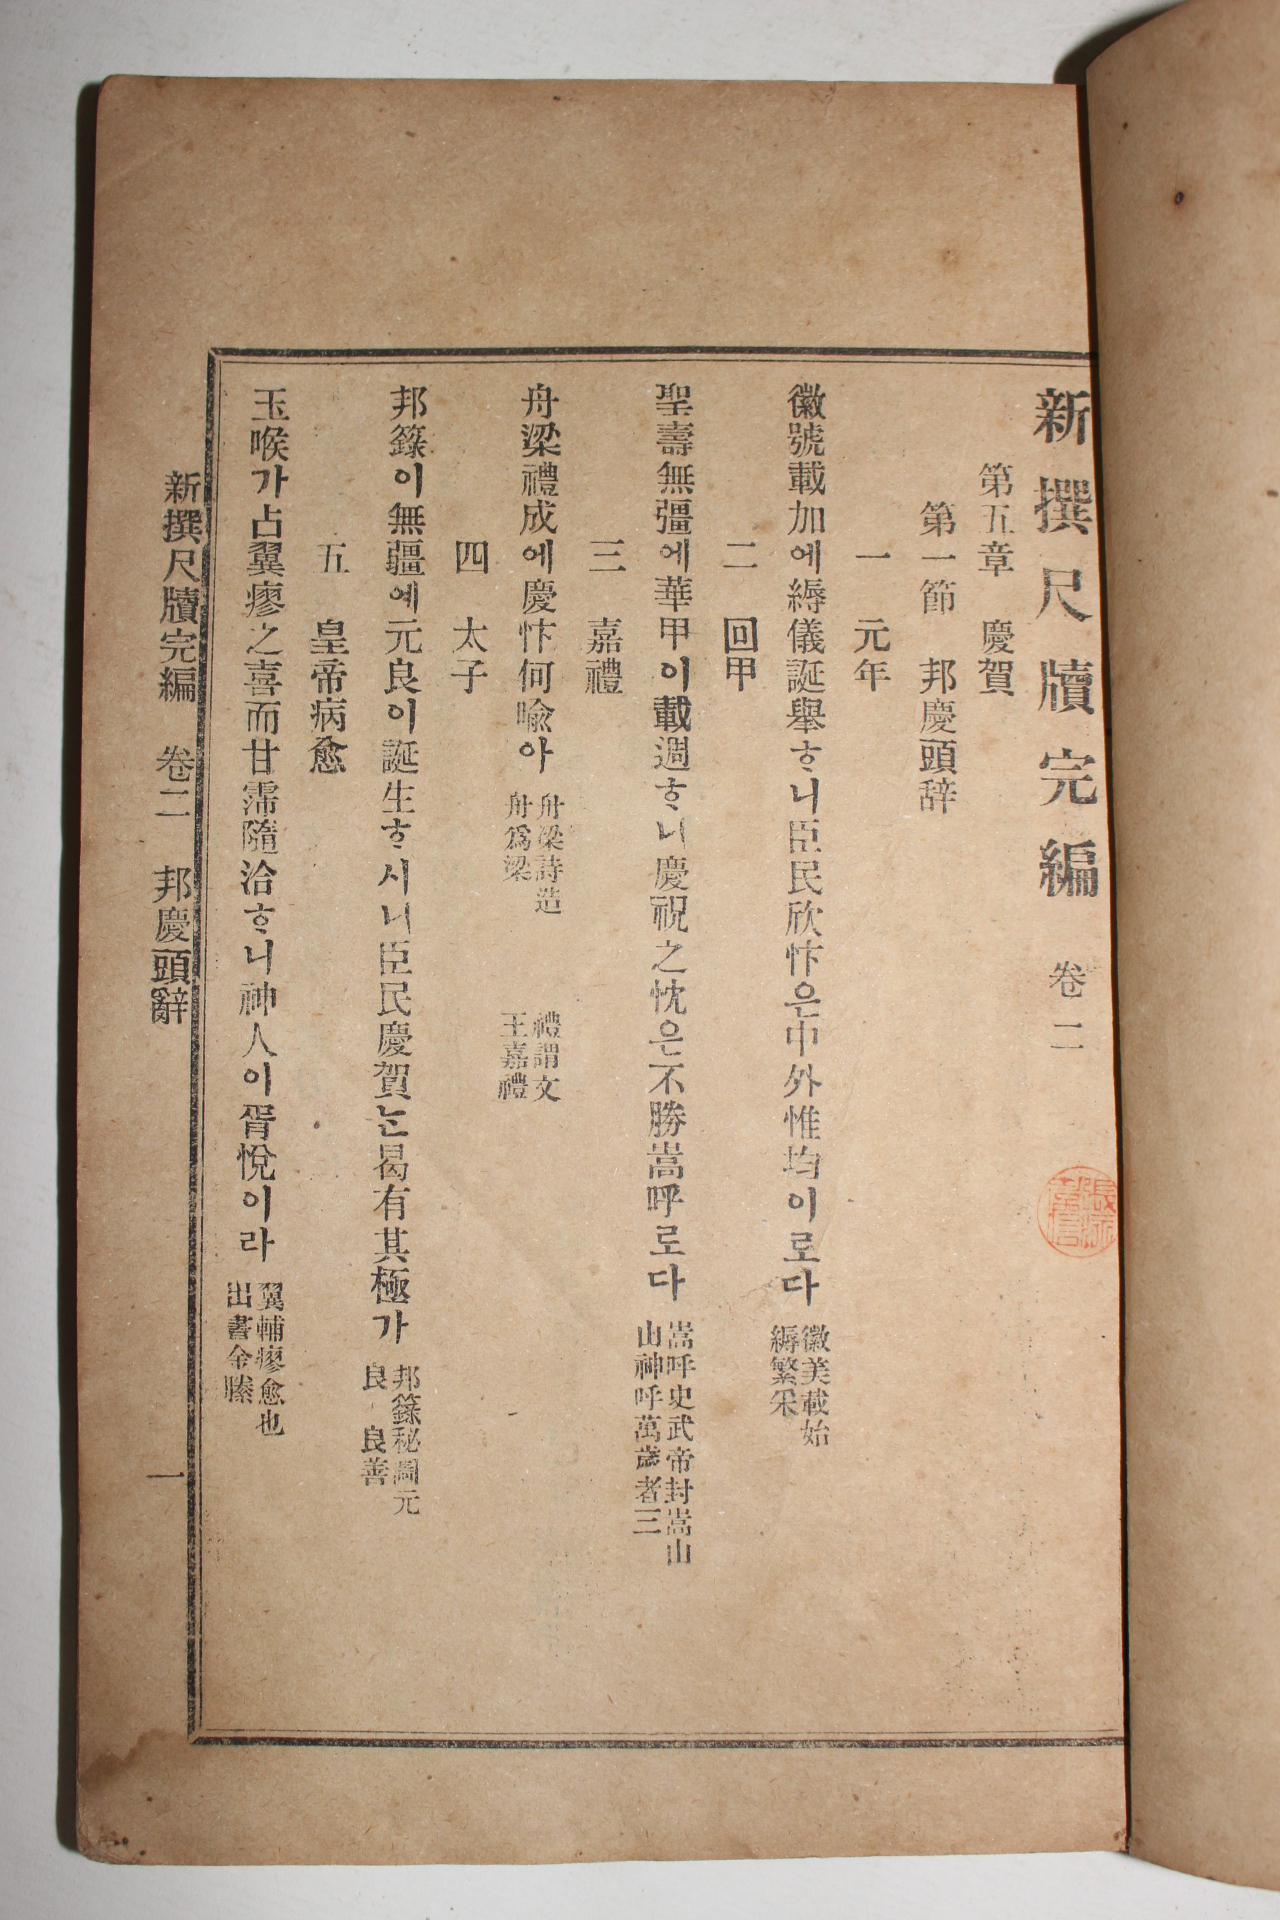 1909년(융희3년) 신선척독완편(新選尺牘完編)권2終 법령편